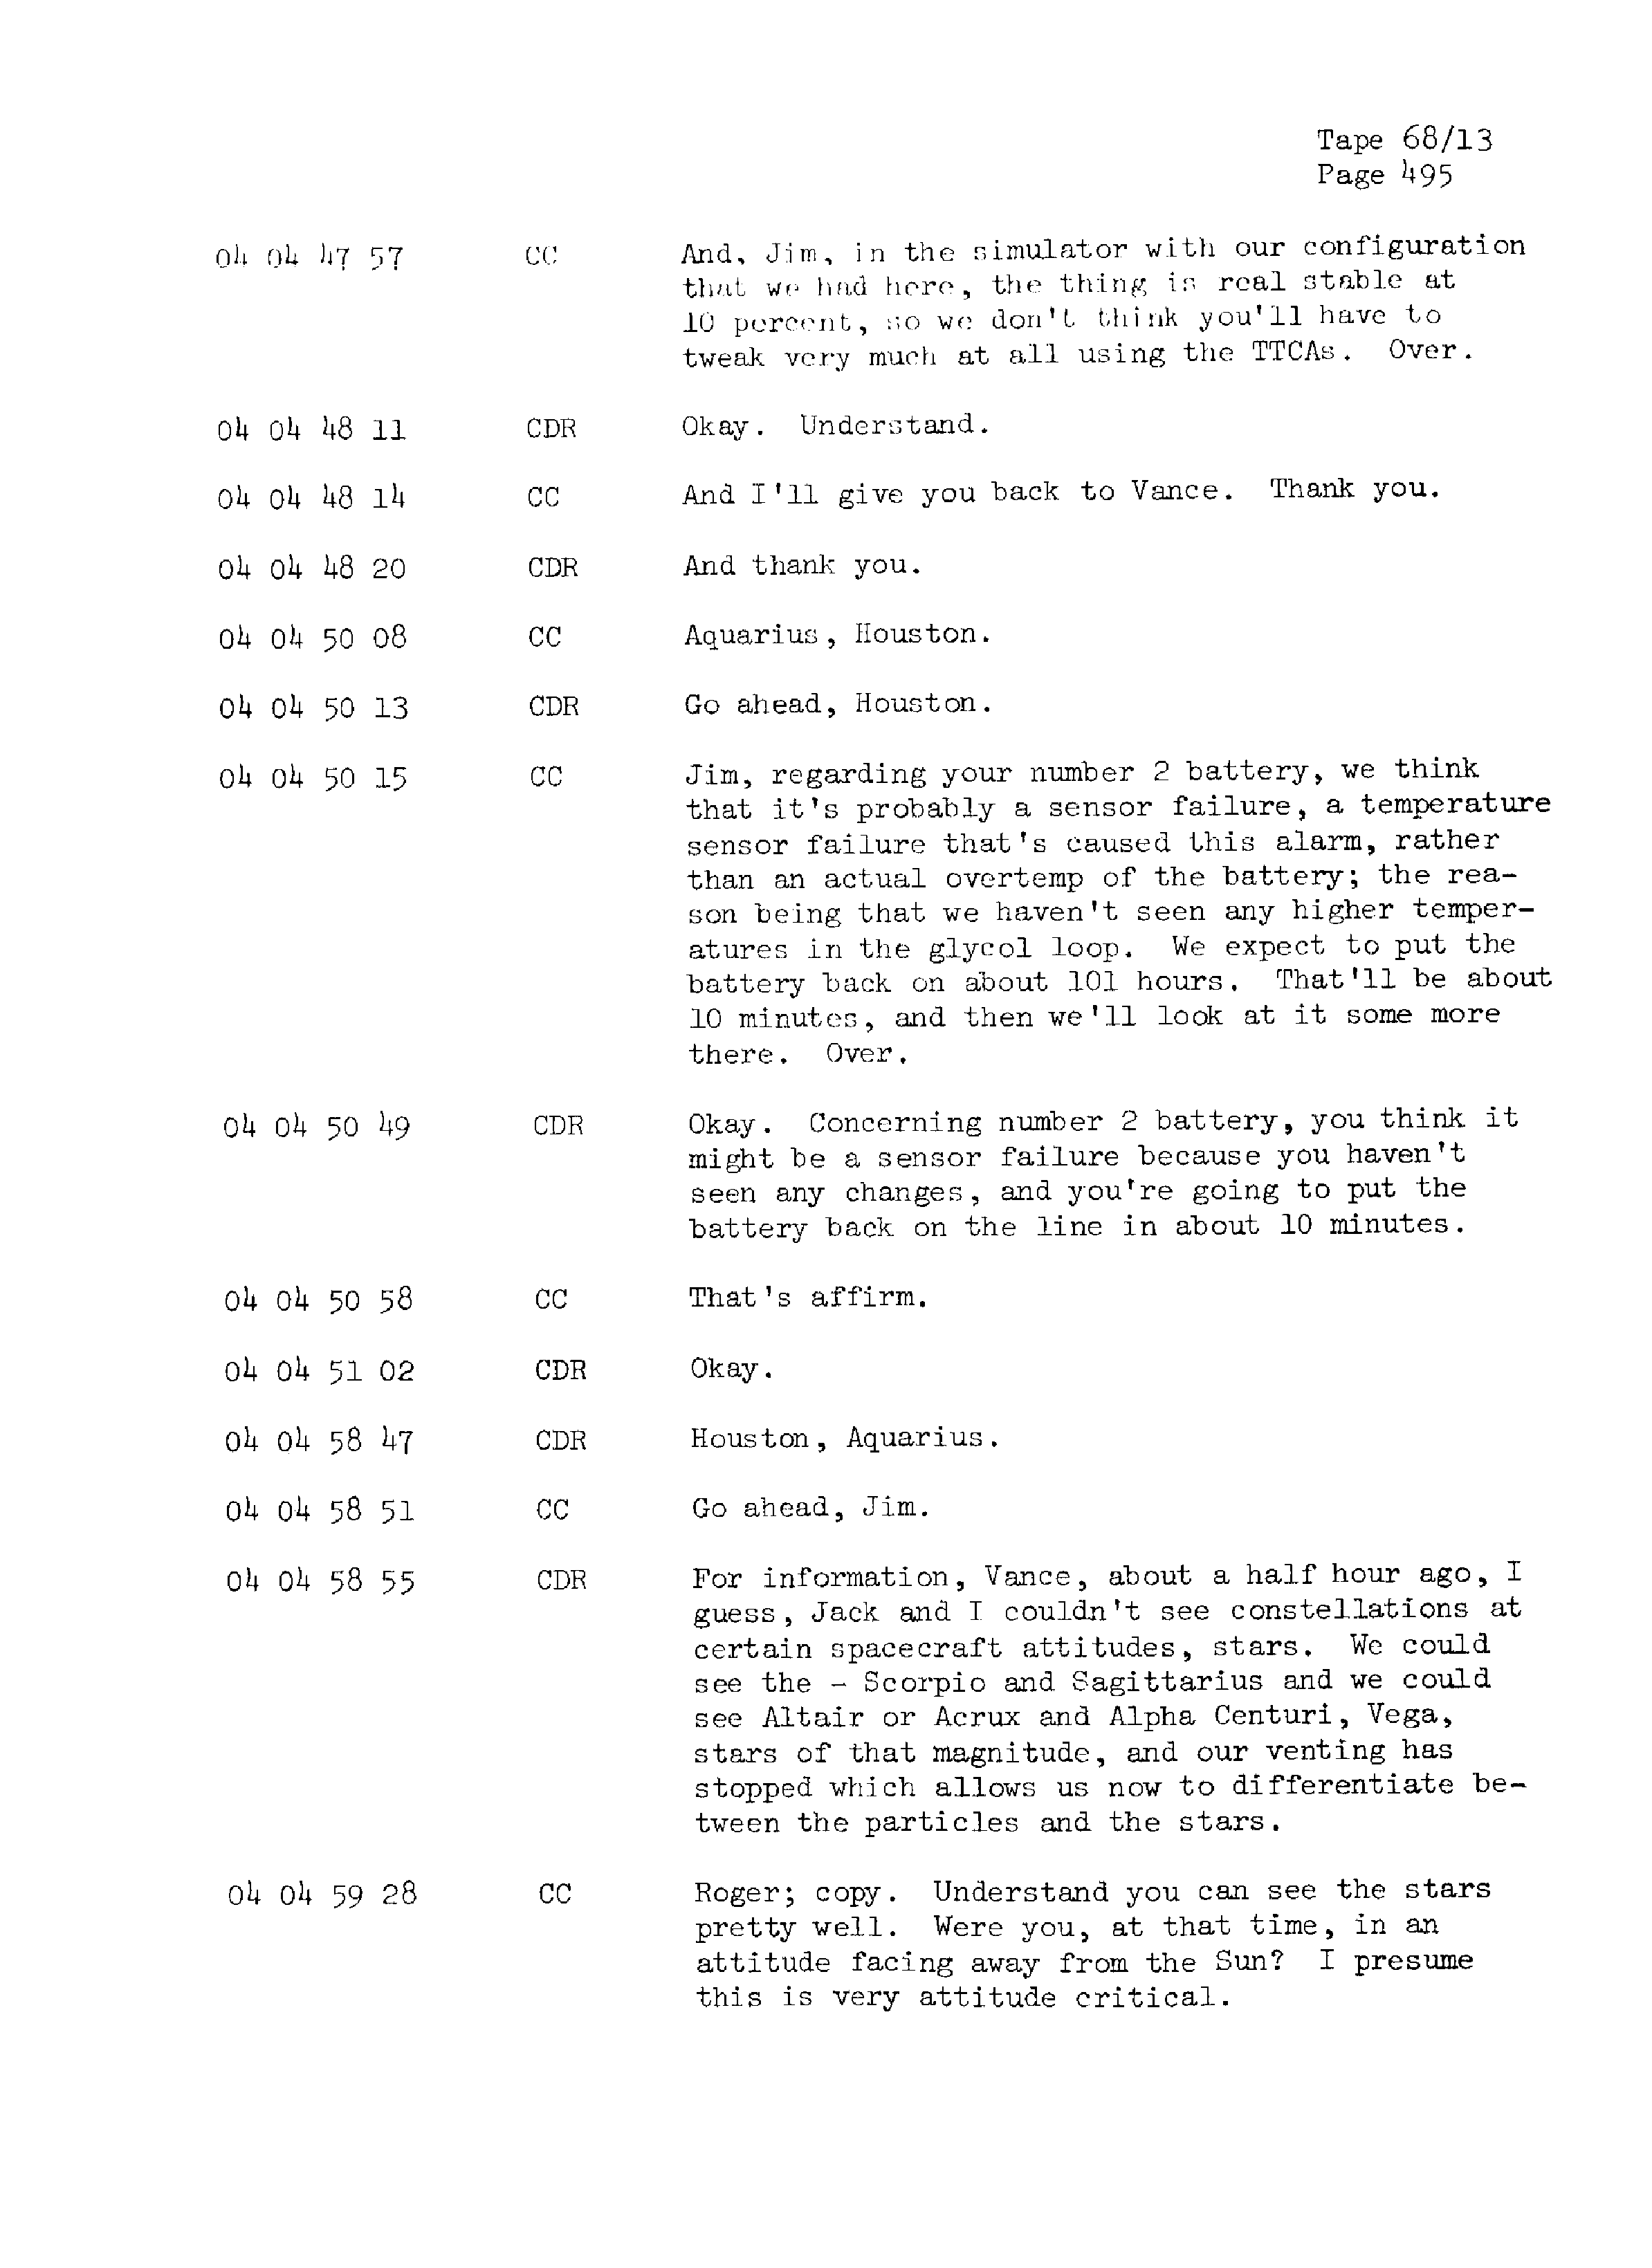 Page 502 of Apollo 13’s original transcript